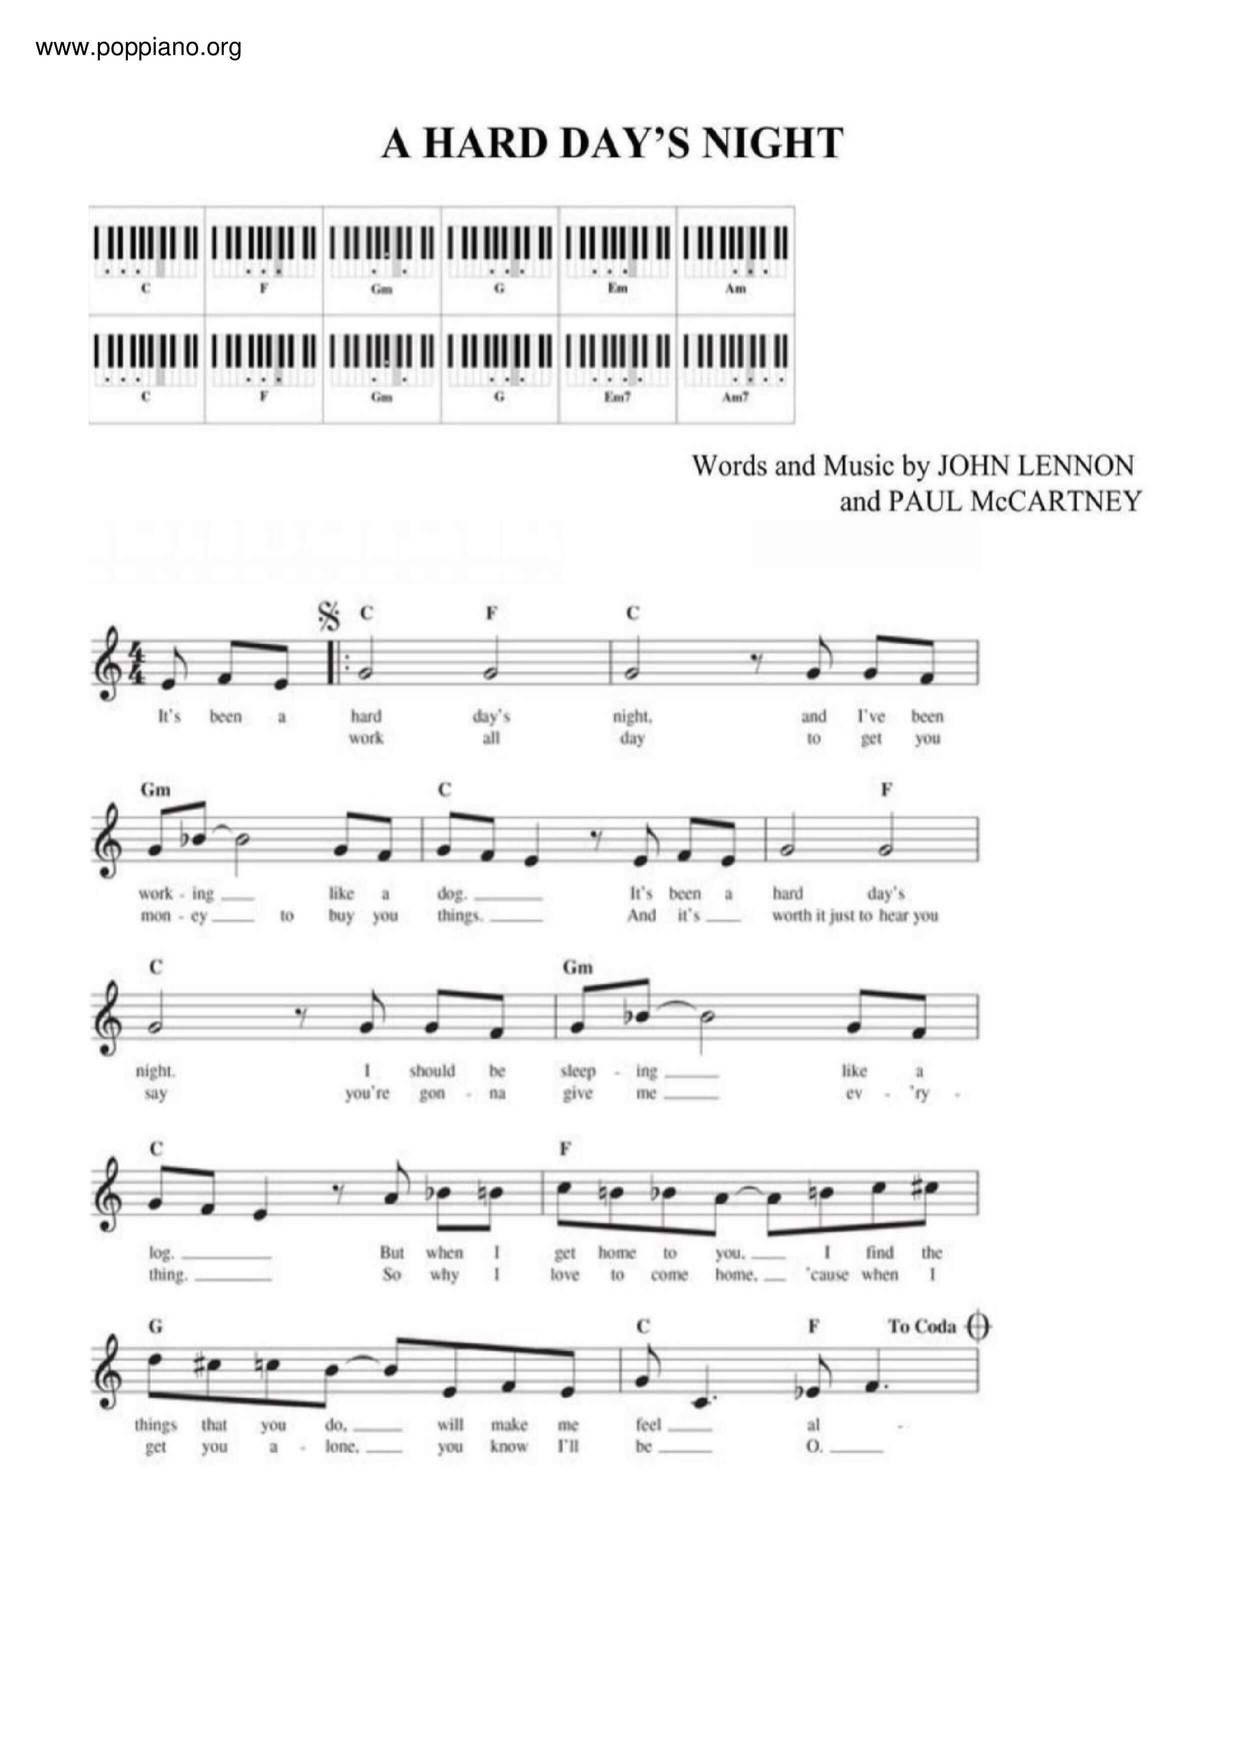 A Hard Day's Night Score